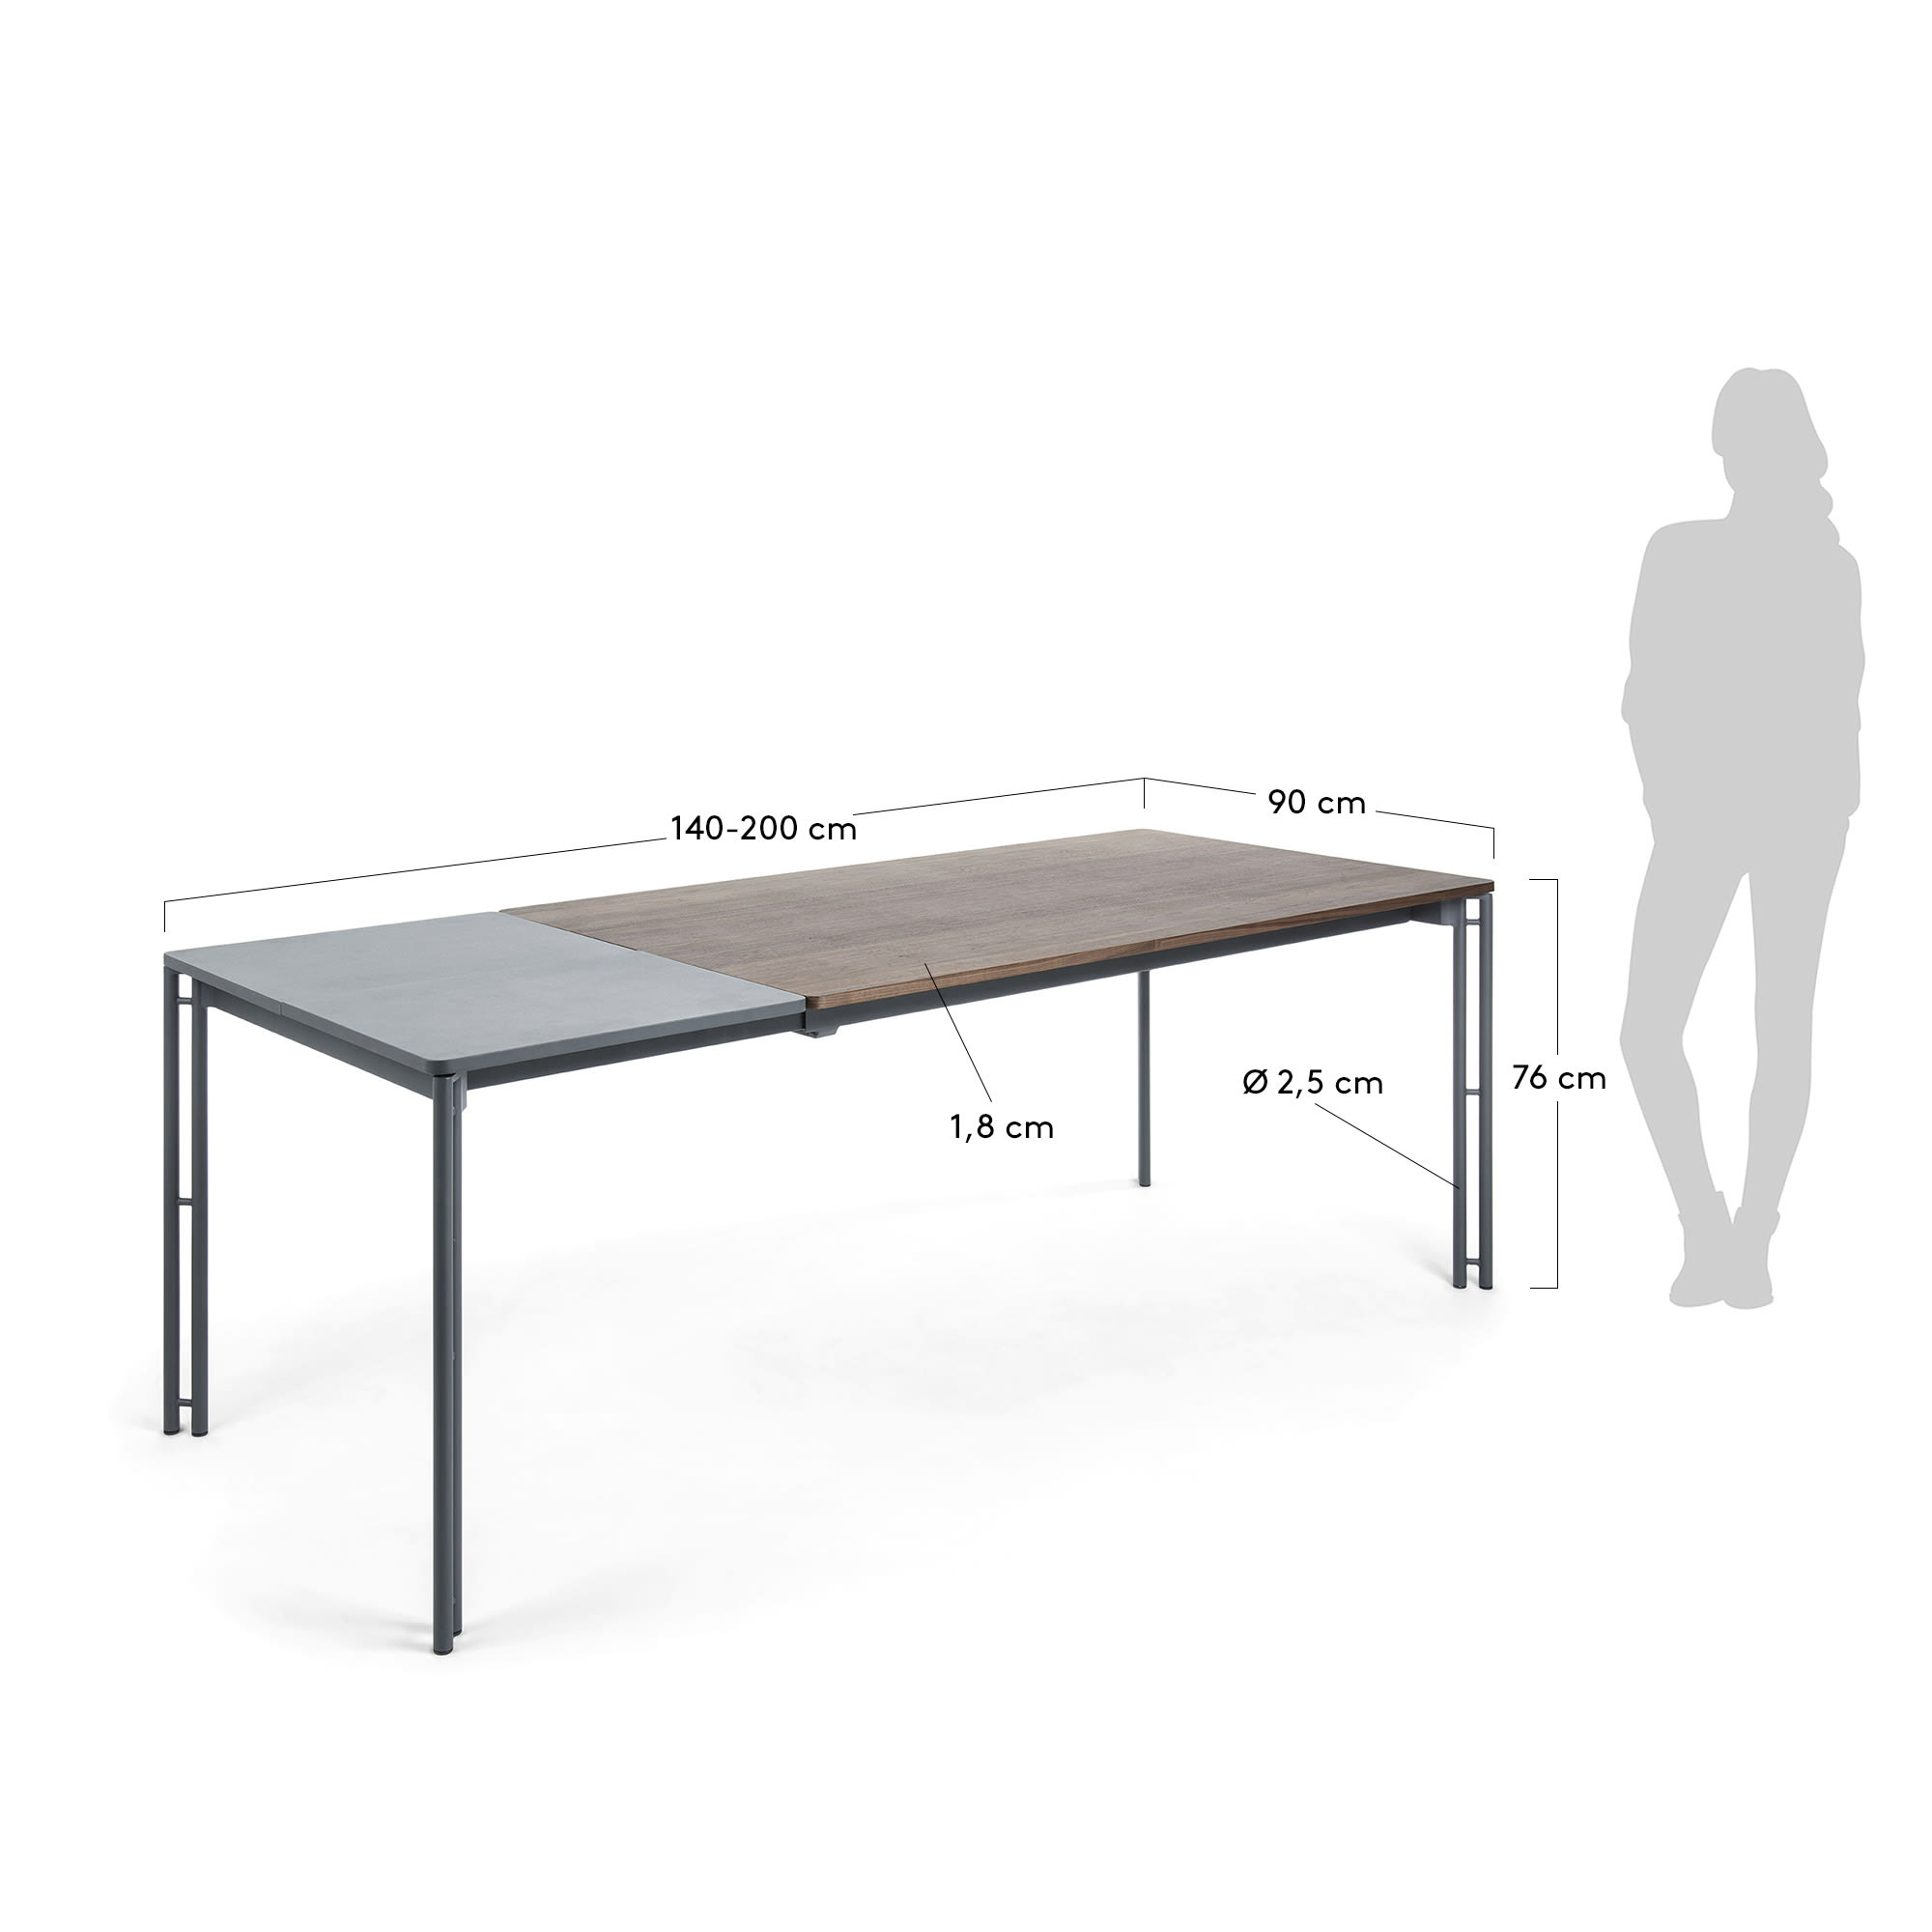 케시아 월넛 확장형 테이블 140(200) x 90cm - 크기